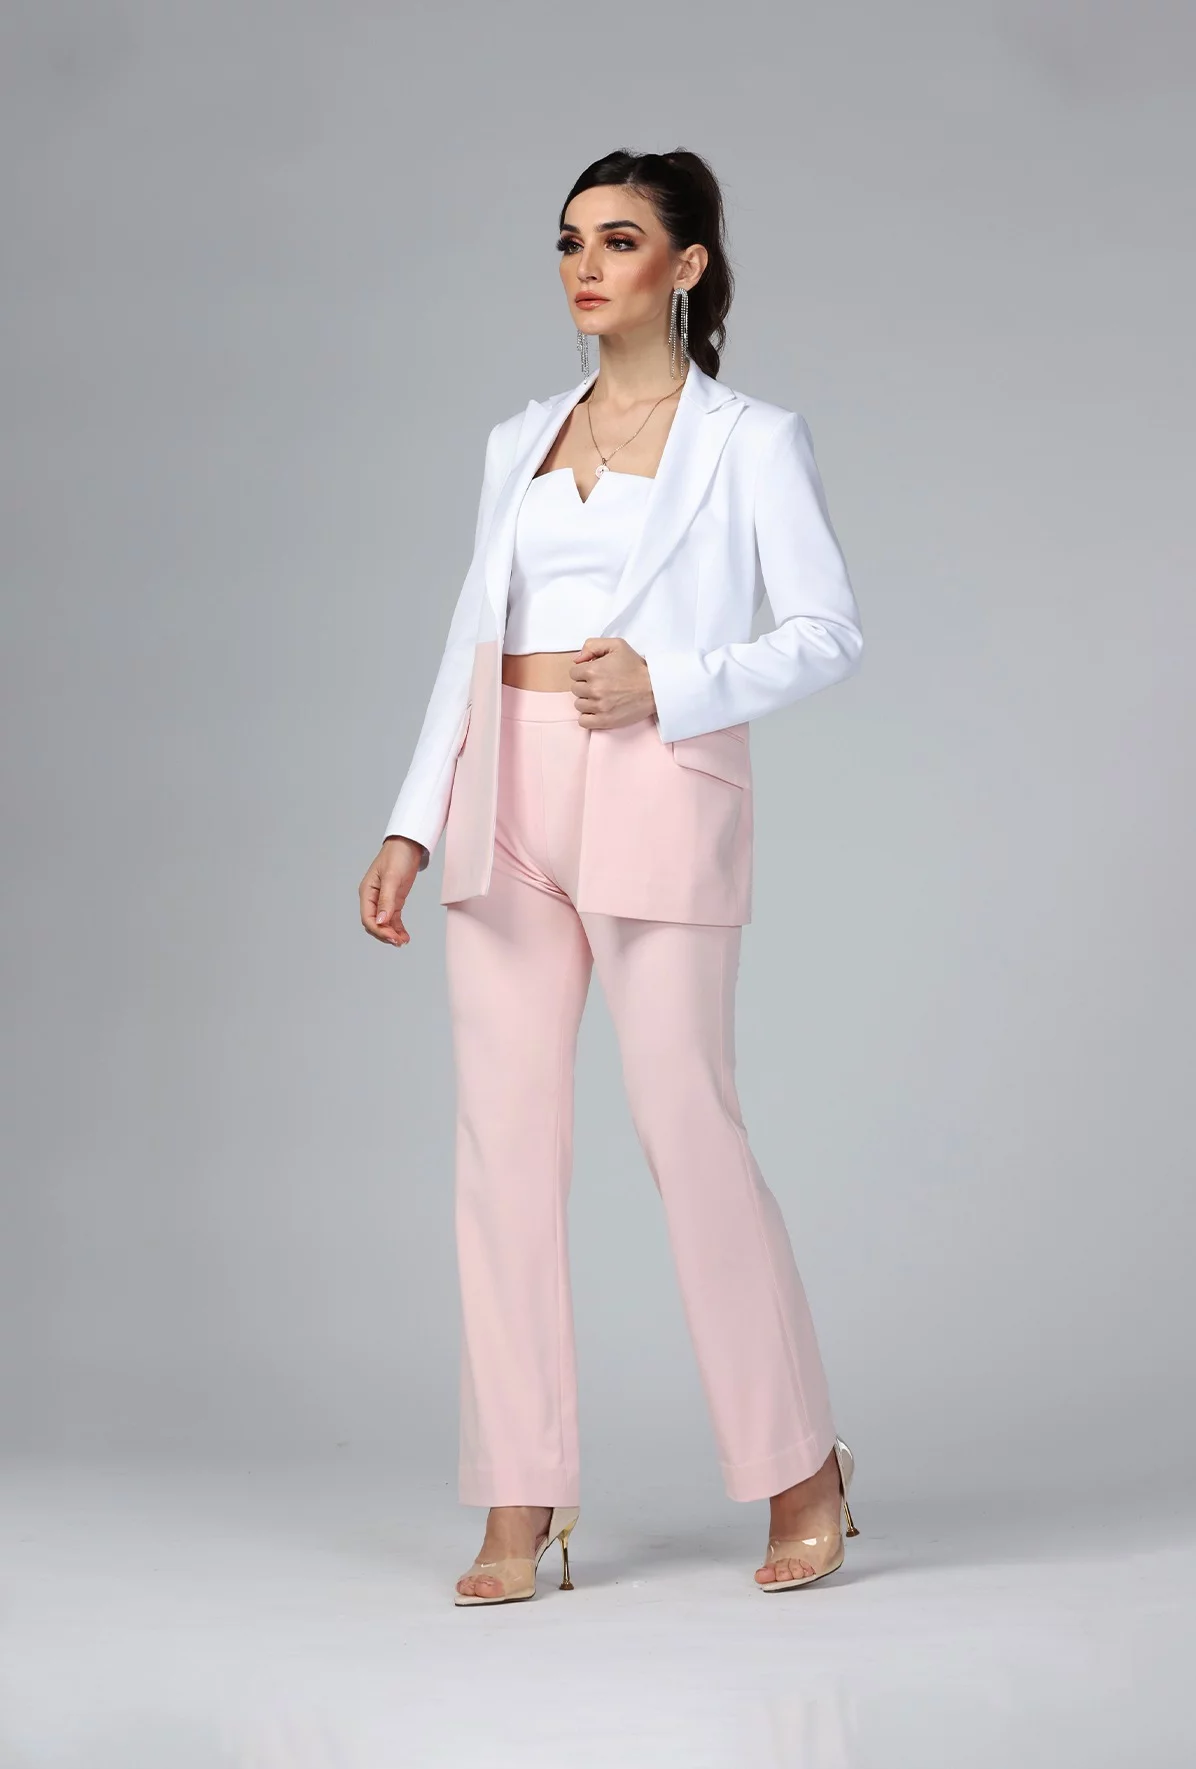 La vie en rose - Dual Toned Suit Set